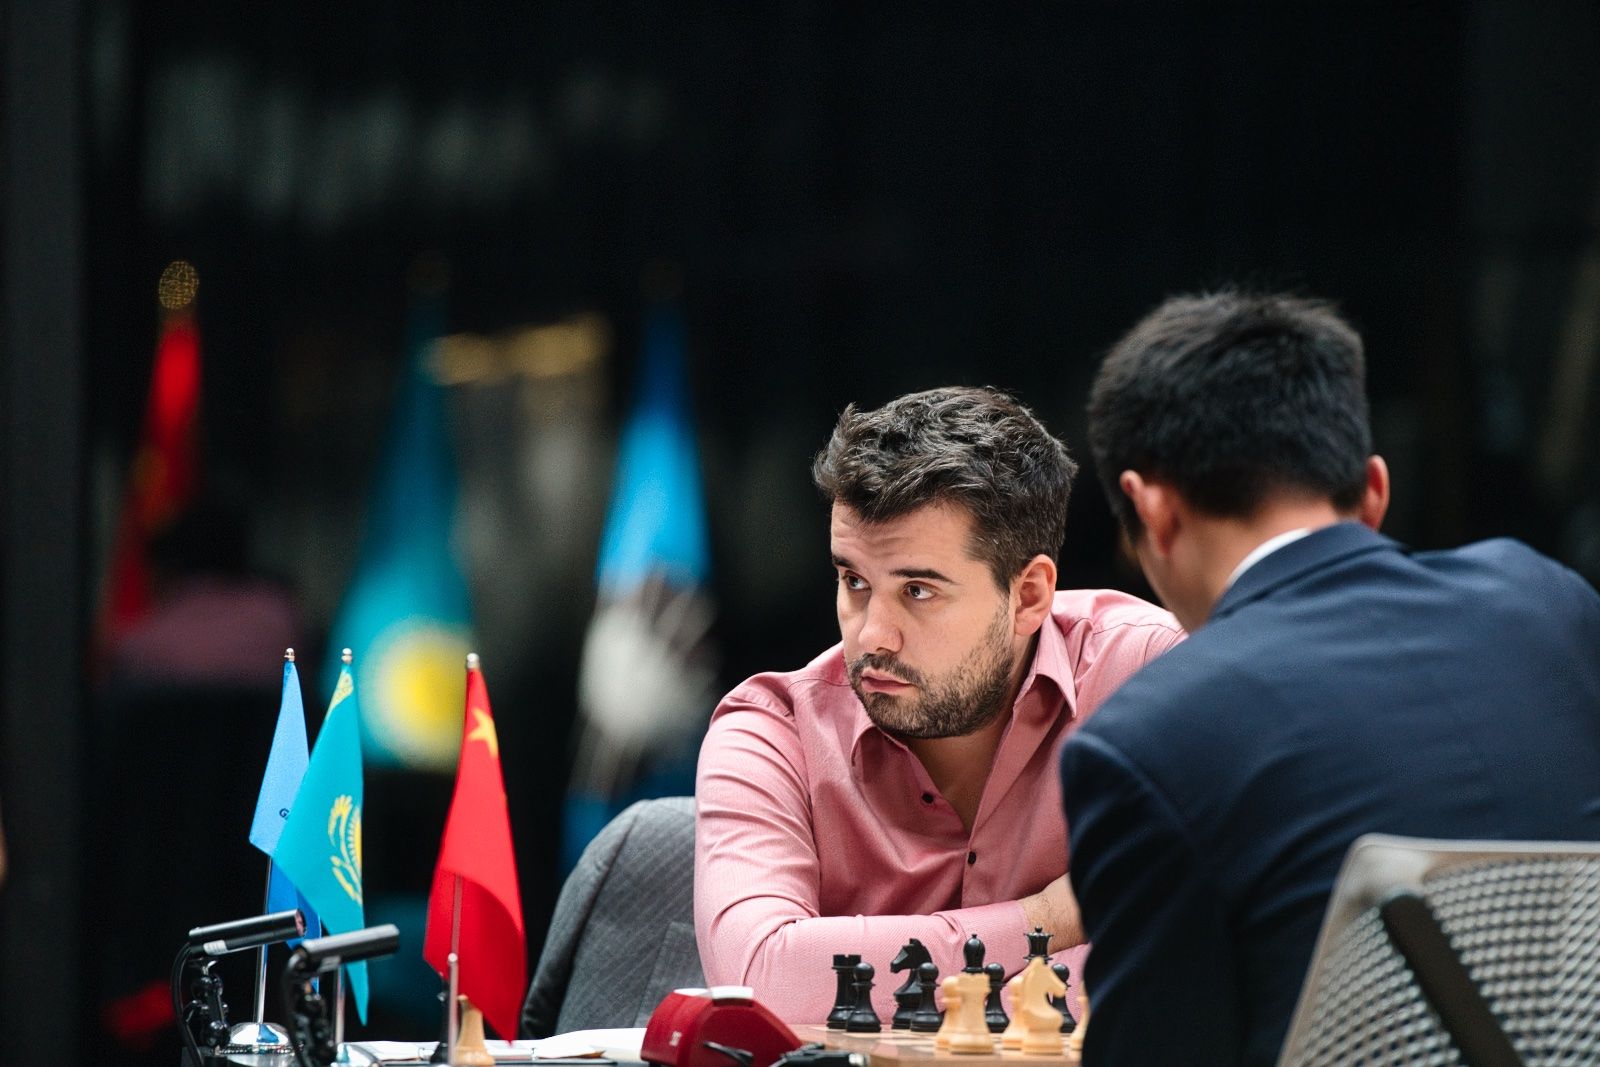 FIDE World Chess Championship Game 1: Nepo Impresses Under Pressure - Chess .com